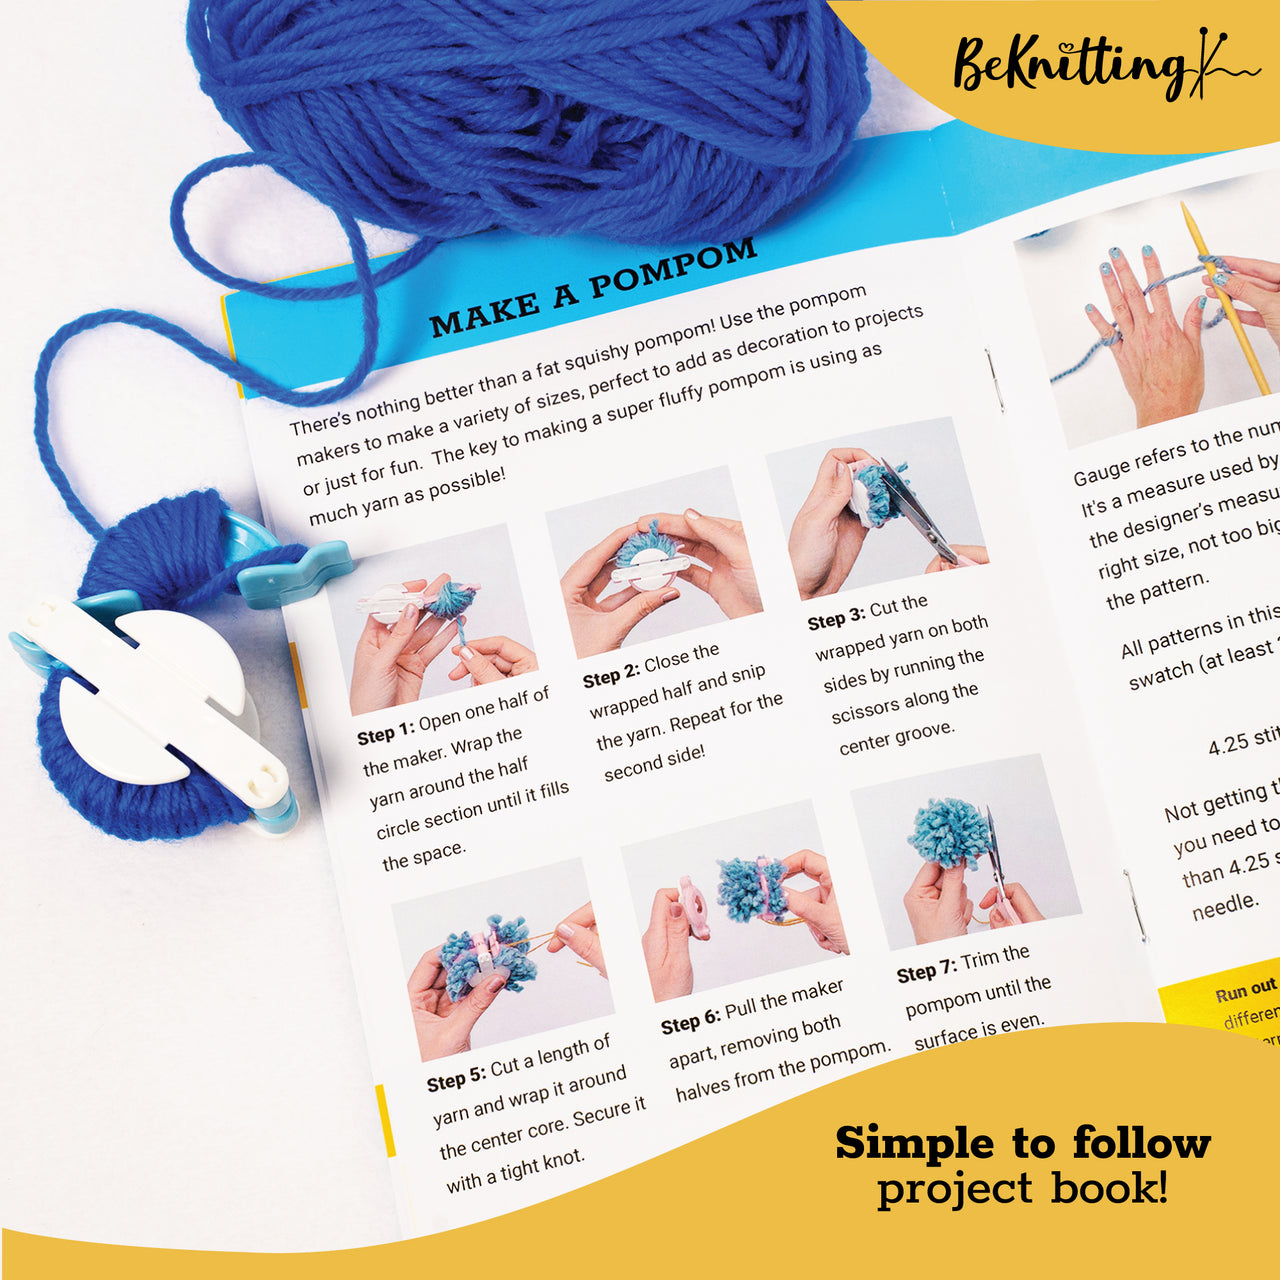 BeKnitting Learn to Knit Loom Kit - DIY Craft w/Round Loom, Yarn, Crochet Hook, & Pen | for Kids & Adults